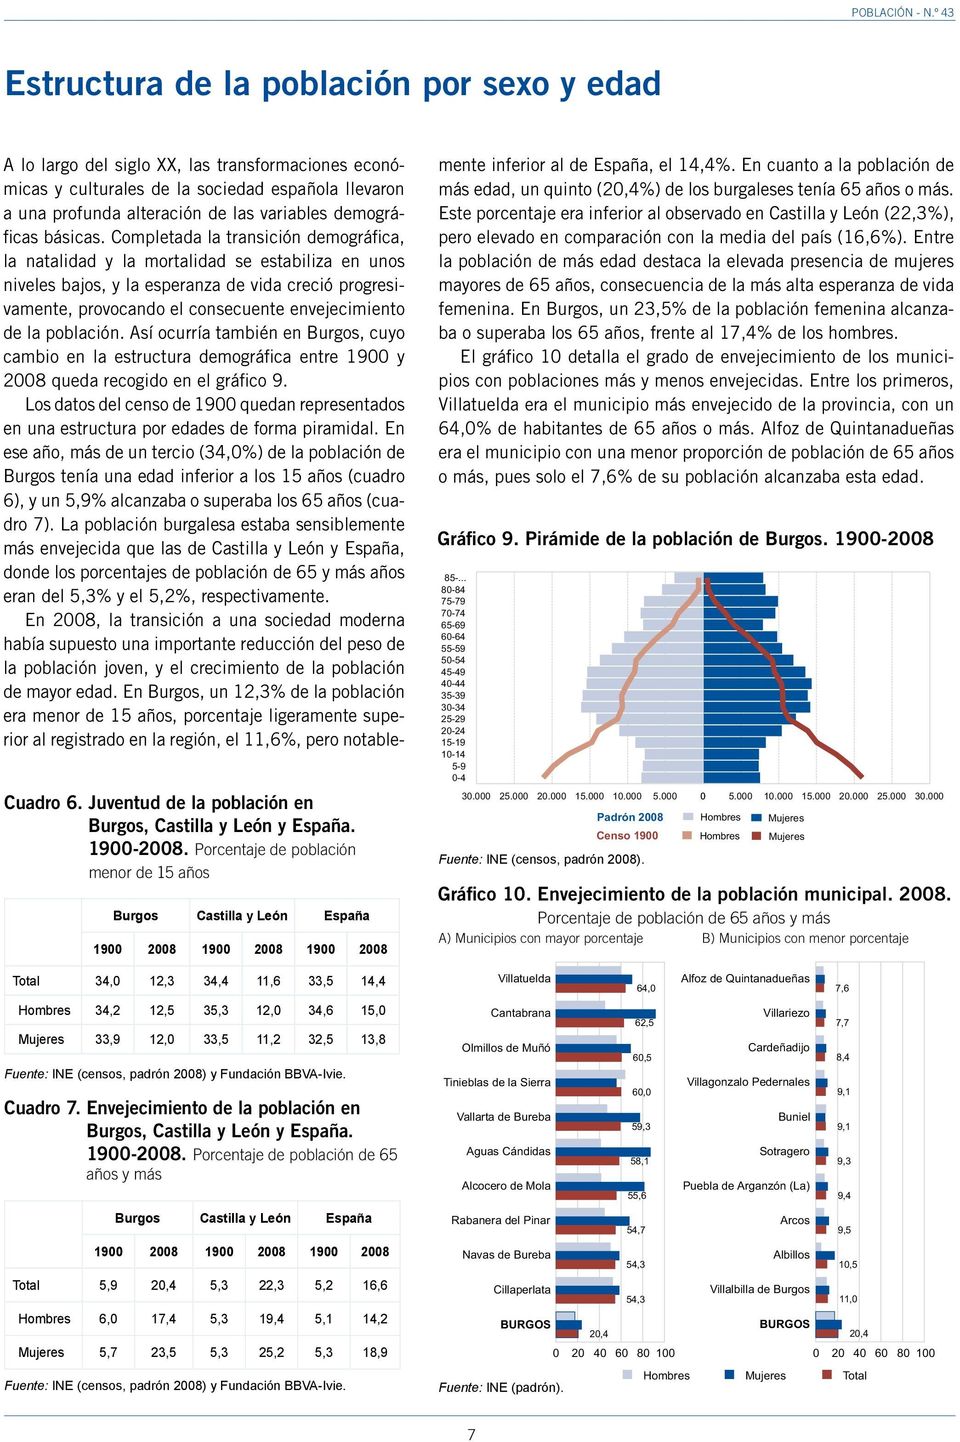 Envejecimiento de la población en, Castilla y León y España. 9-28.